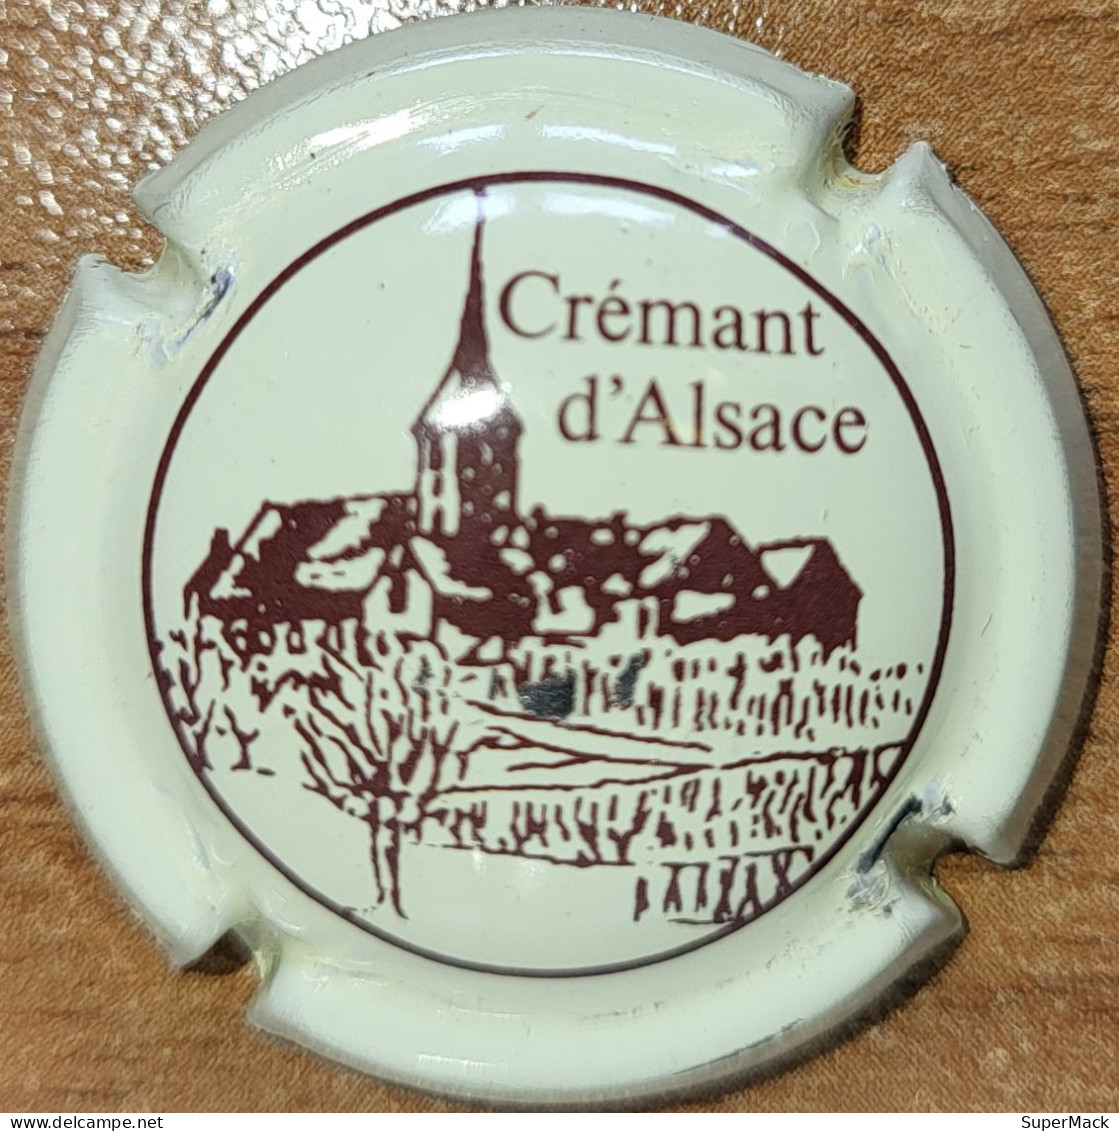 Capsule Crémant Alsace De VIGNERONS Série Clocher, Lettres épaisses, 't' Au Dessus Du 'c', Crème & Brun Nr 51 - Mousseux